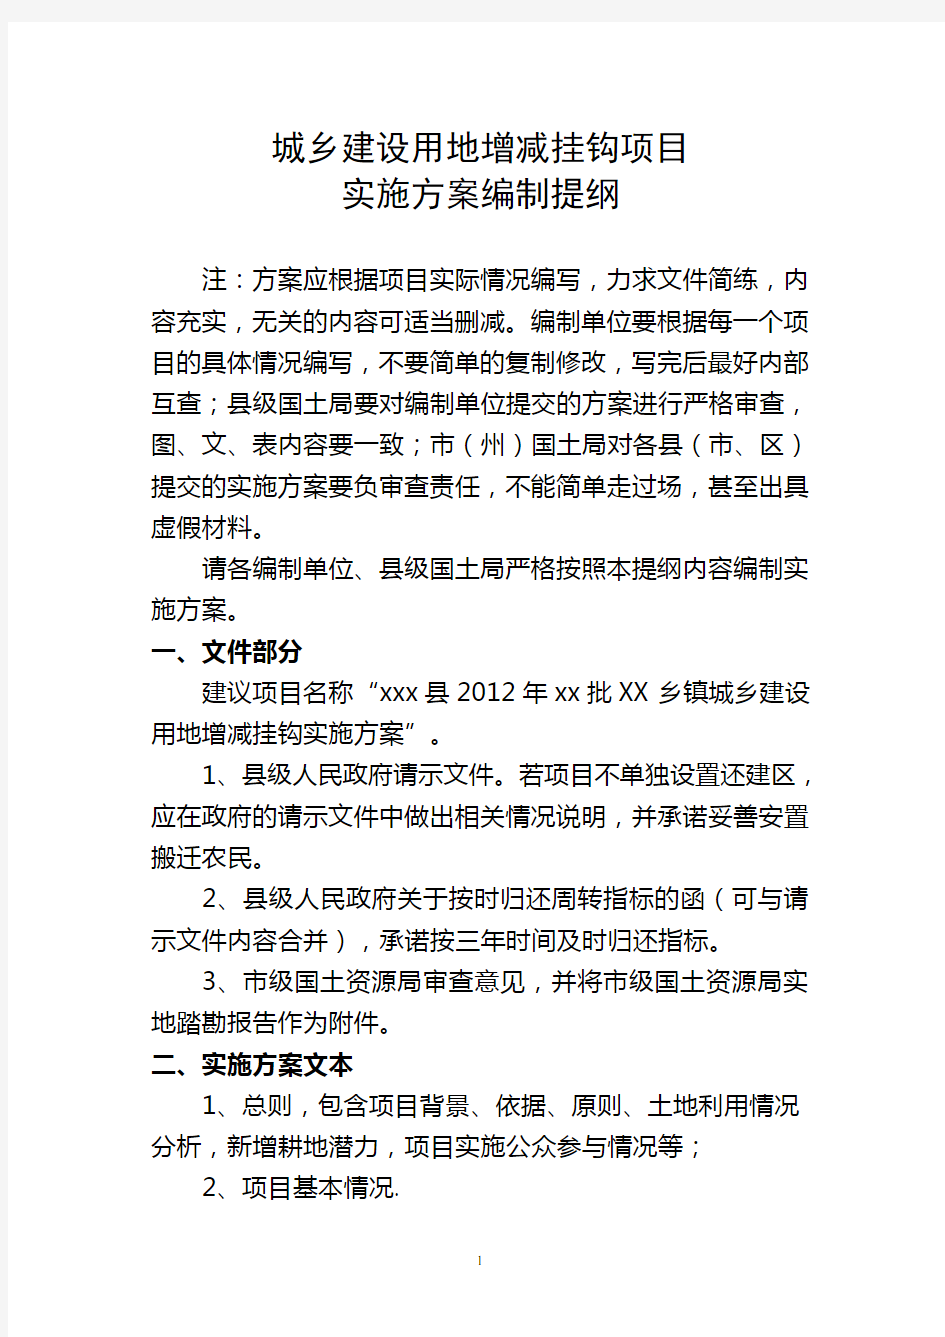 湖北省增减挂钩项目实施方案编制内容提纲